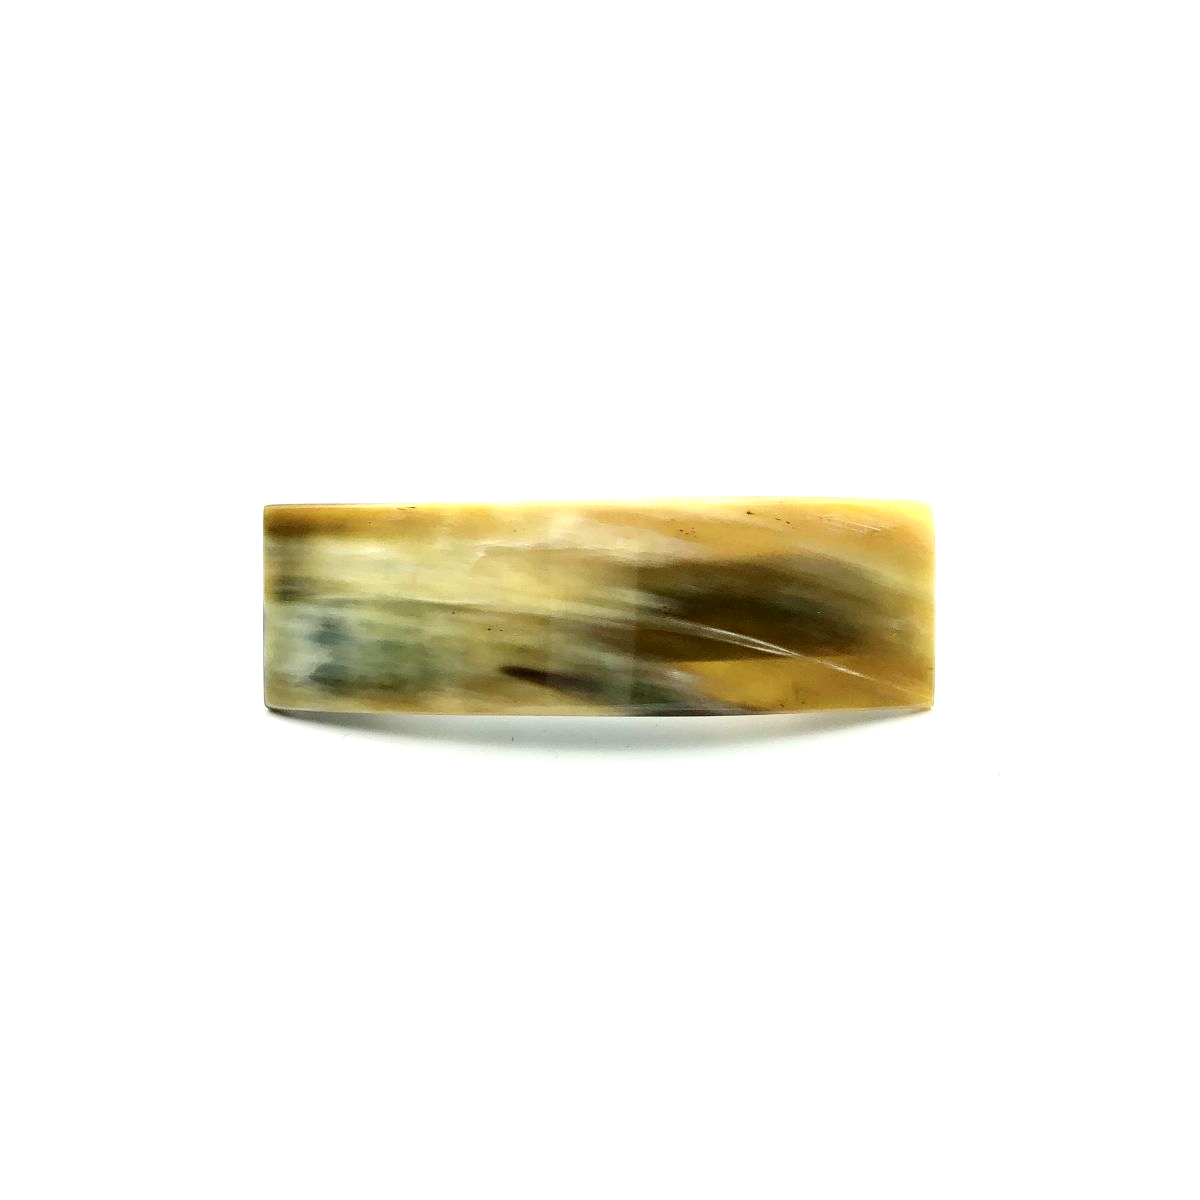 Haarspange aus hellem Horn - mittel, rechteckig - 9,5 cm